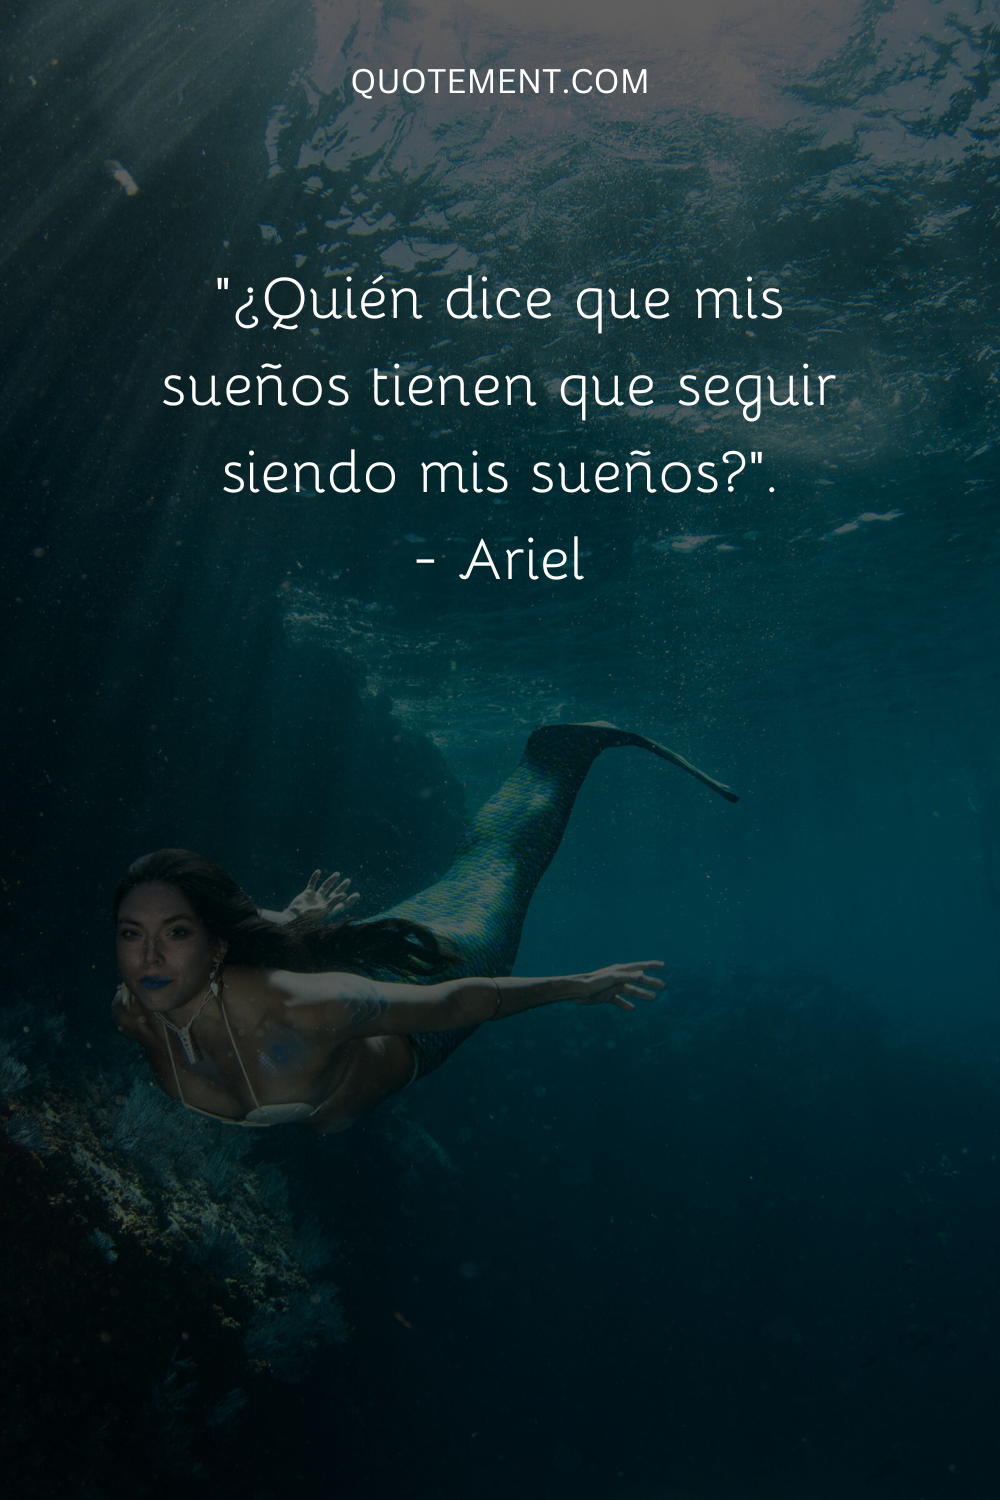 "¿Quién dice que mis sueños tienen que seguir siendo mis sueños?" - Ariel